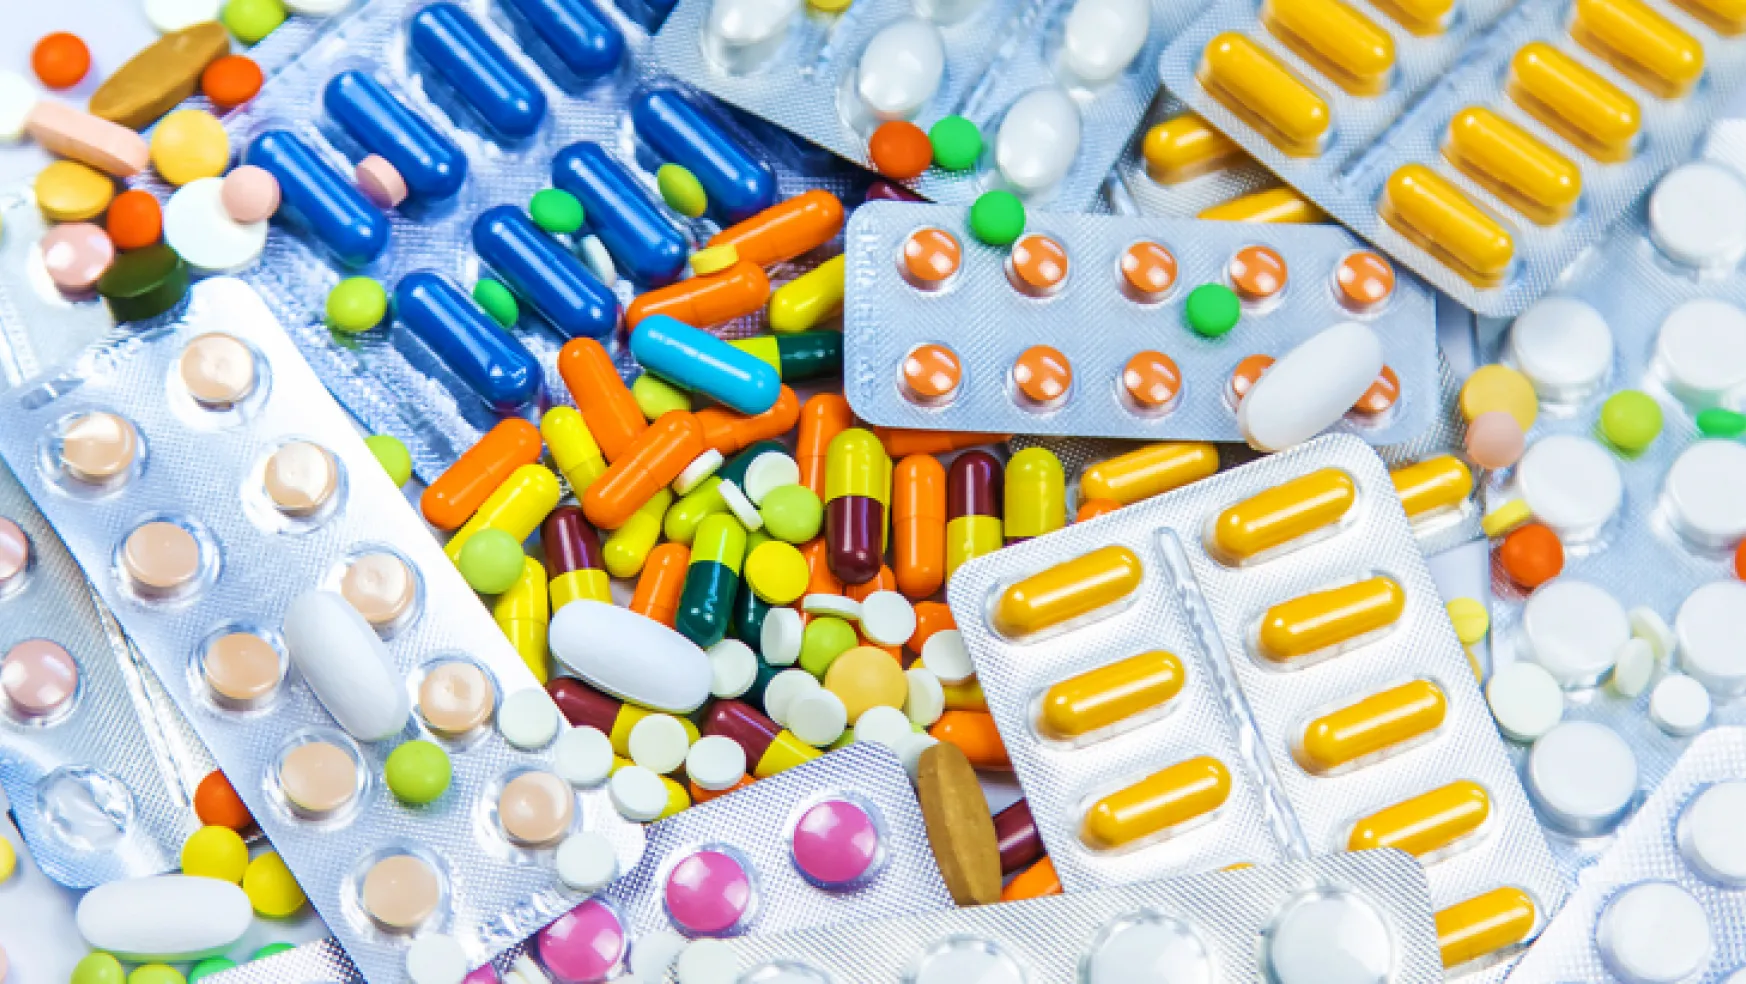 44 ilaç 'Bedeli Ödenecek İlaçlar Listesine' alındı